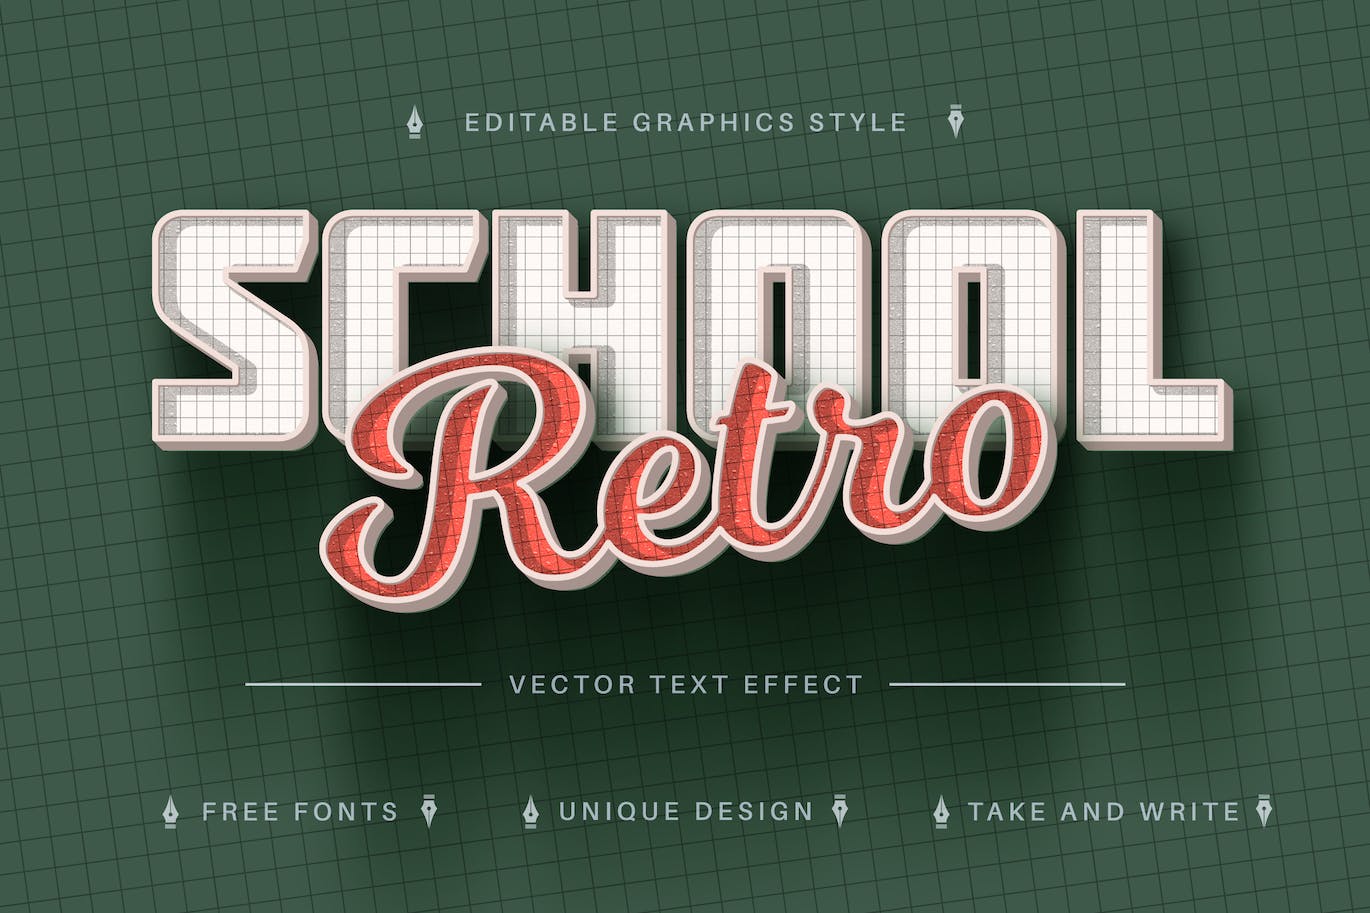 复古网格矢量文字效果字体样式 Retro School – Editable Text Effect, Font Style 插件预设 第1张